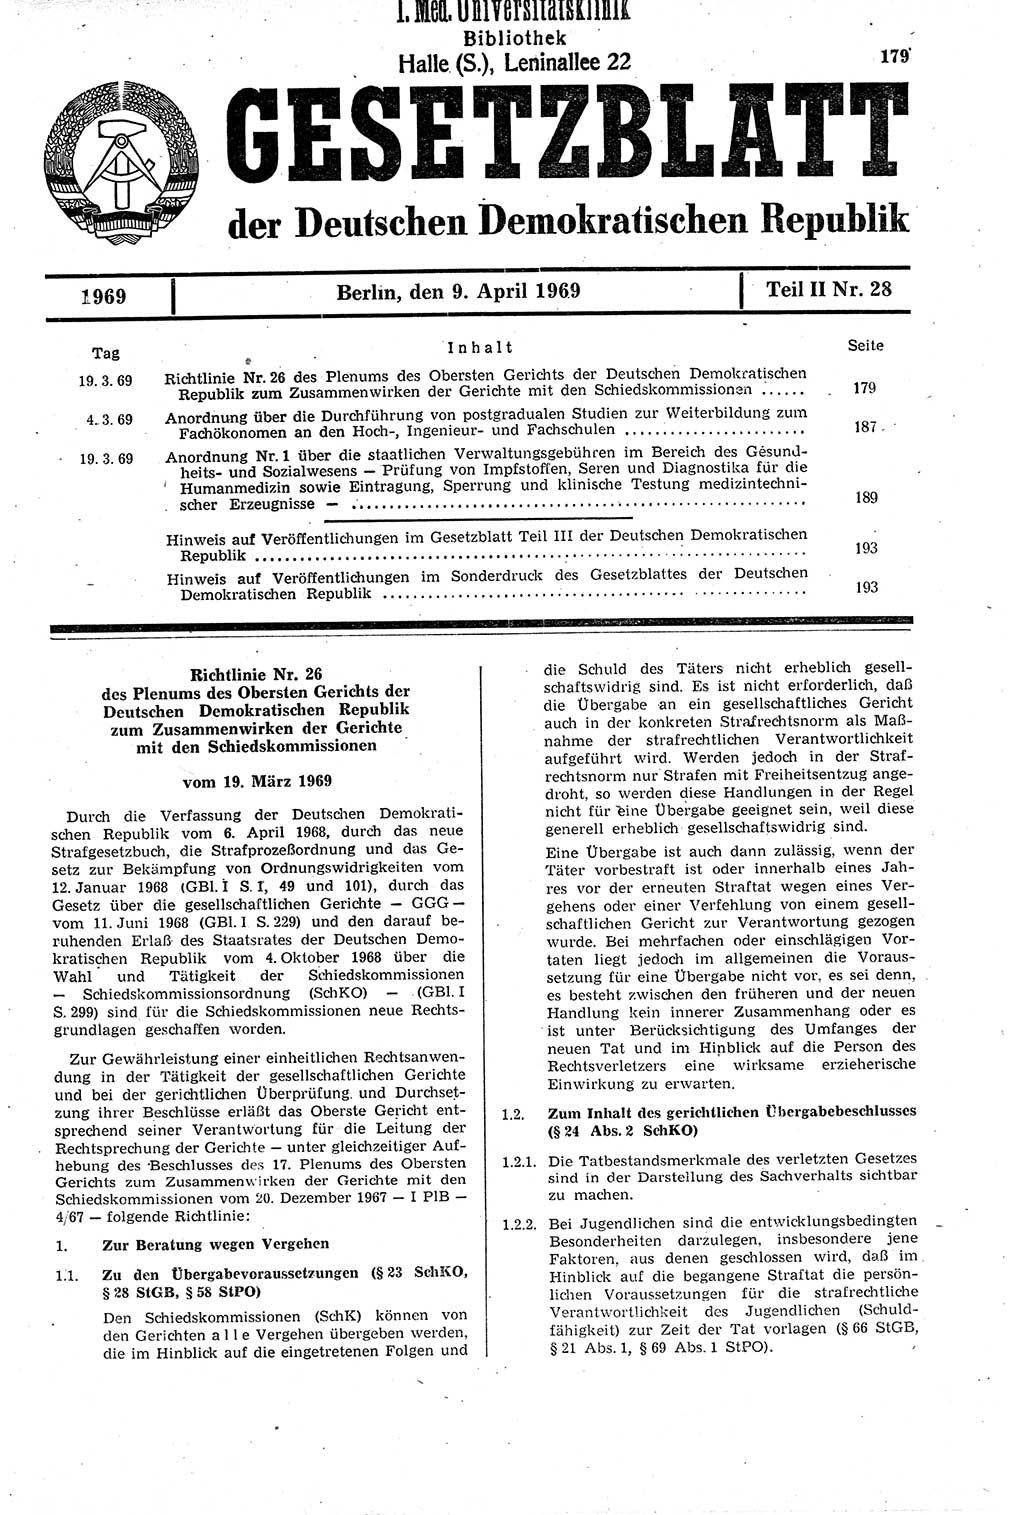 Gesetzblatt (GBl.) der Deutschen Demokratischen Republik (DDR) Teil ⅠⅠ 1969, Seite 179 (GBl. DDR ⅠⅠ 1969, S. 179)